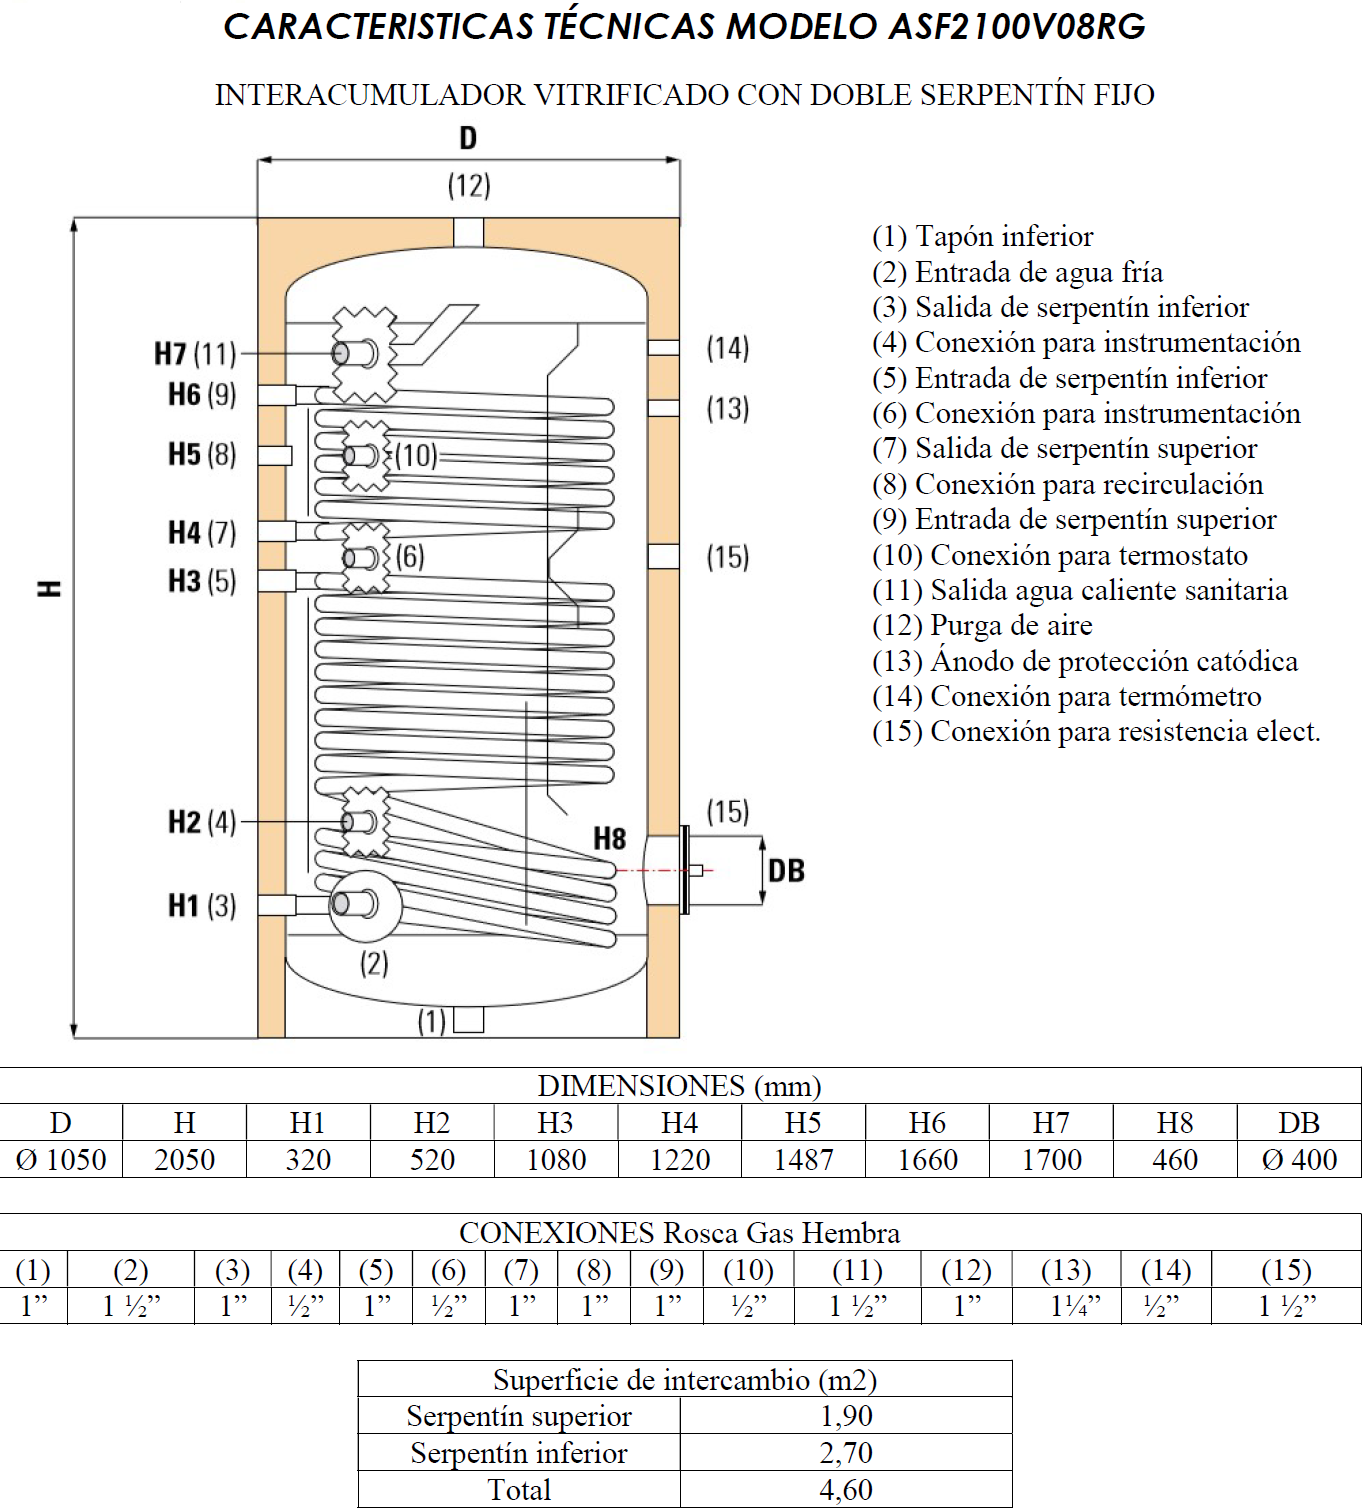 1) Tapón inferior (2) Entrada de agua fría (3) Salida de serpentín inferior (4) Conexión para instrumentación (5) Entrada de serpentín inferior (6) Conexión para instrumentación (7) Salida de serpentín superior (8) Conexión para recirculación (9) Entrada de serpentín superior (10) Conexión para termostato (11) Salida agua caliente sanitaria (12) Purga de aire (13) Ánodo de protección catódica (14) Conexión para termómetro (15) Conexión para resistencia elect.